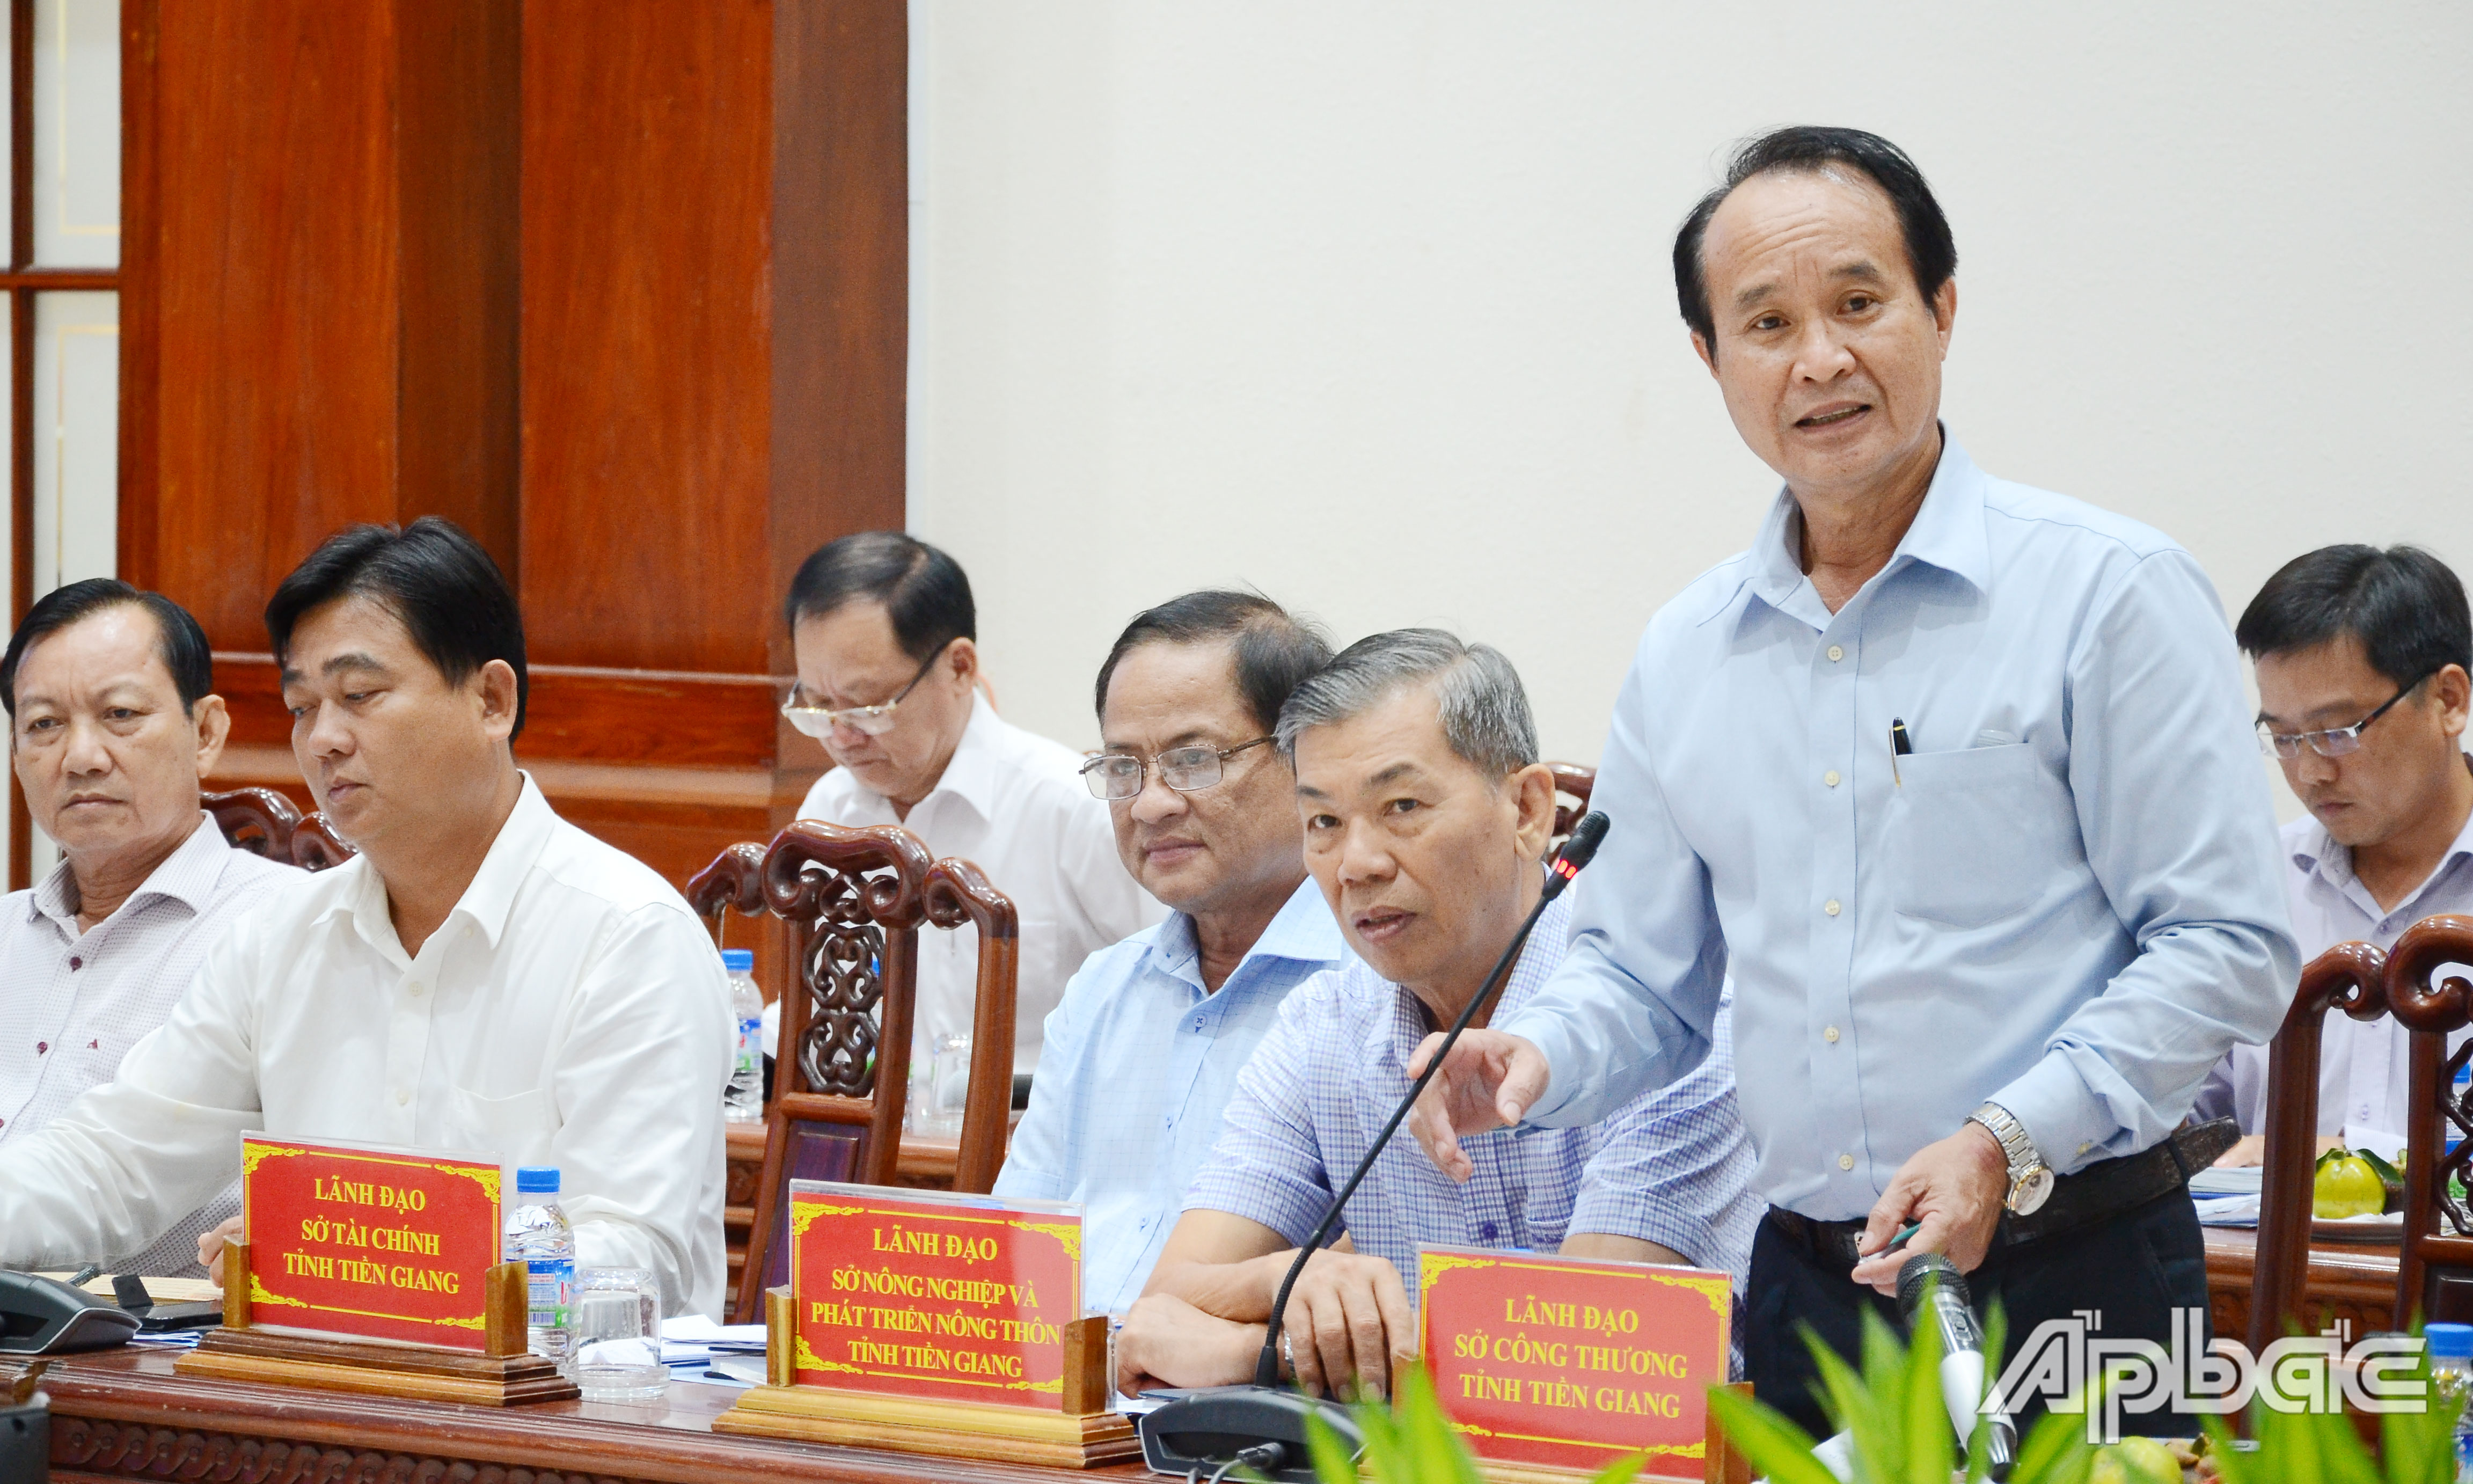 Giám đốc Sở Công thương tỉnh Tiền Giang Lưu Văn Phi phát biểu tại hội nghị.